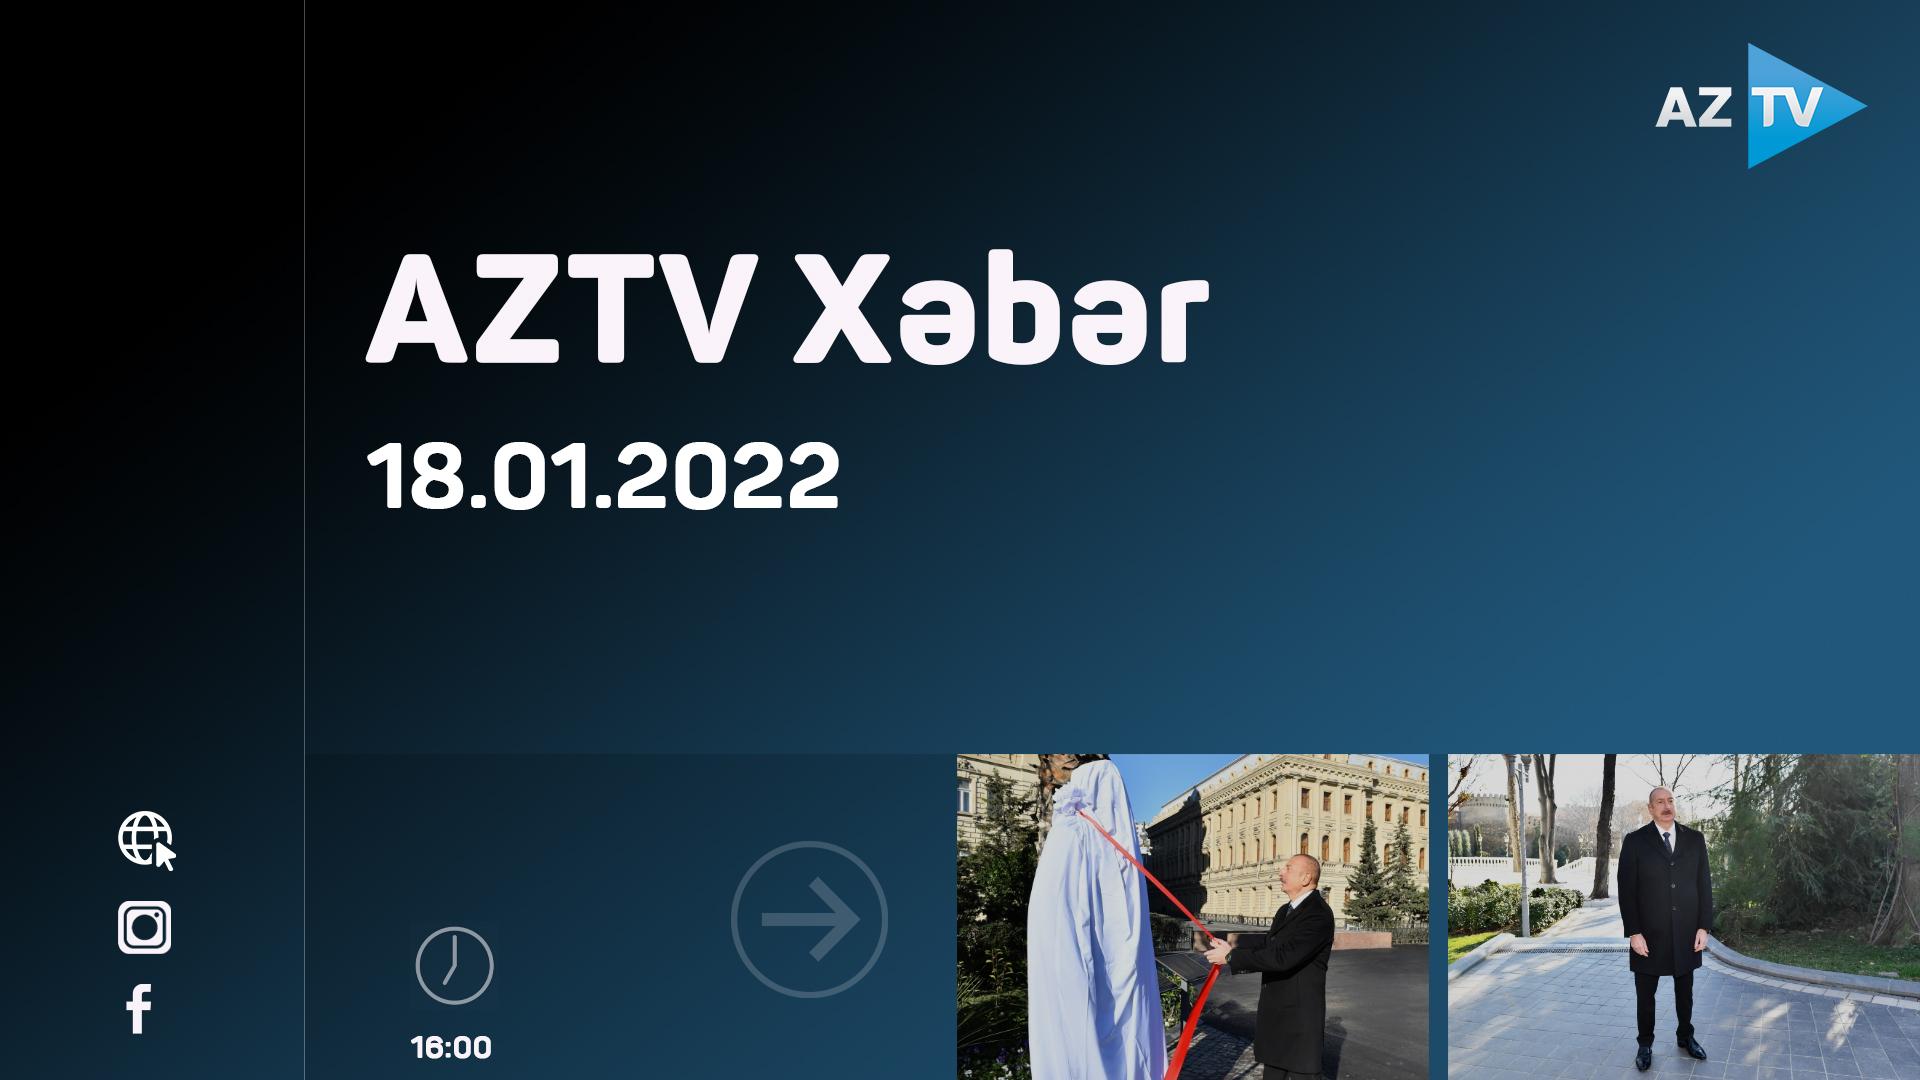 "AZTV Xəbər" (16:00) | 18.01.2022